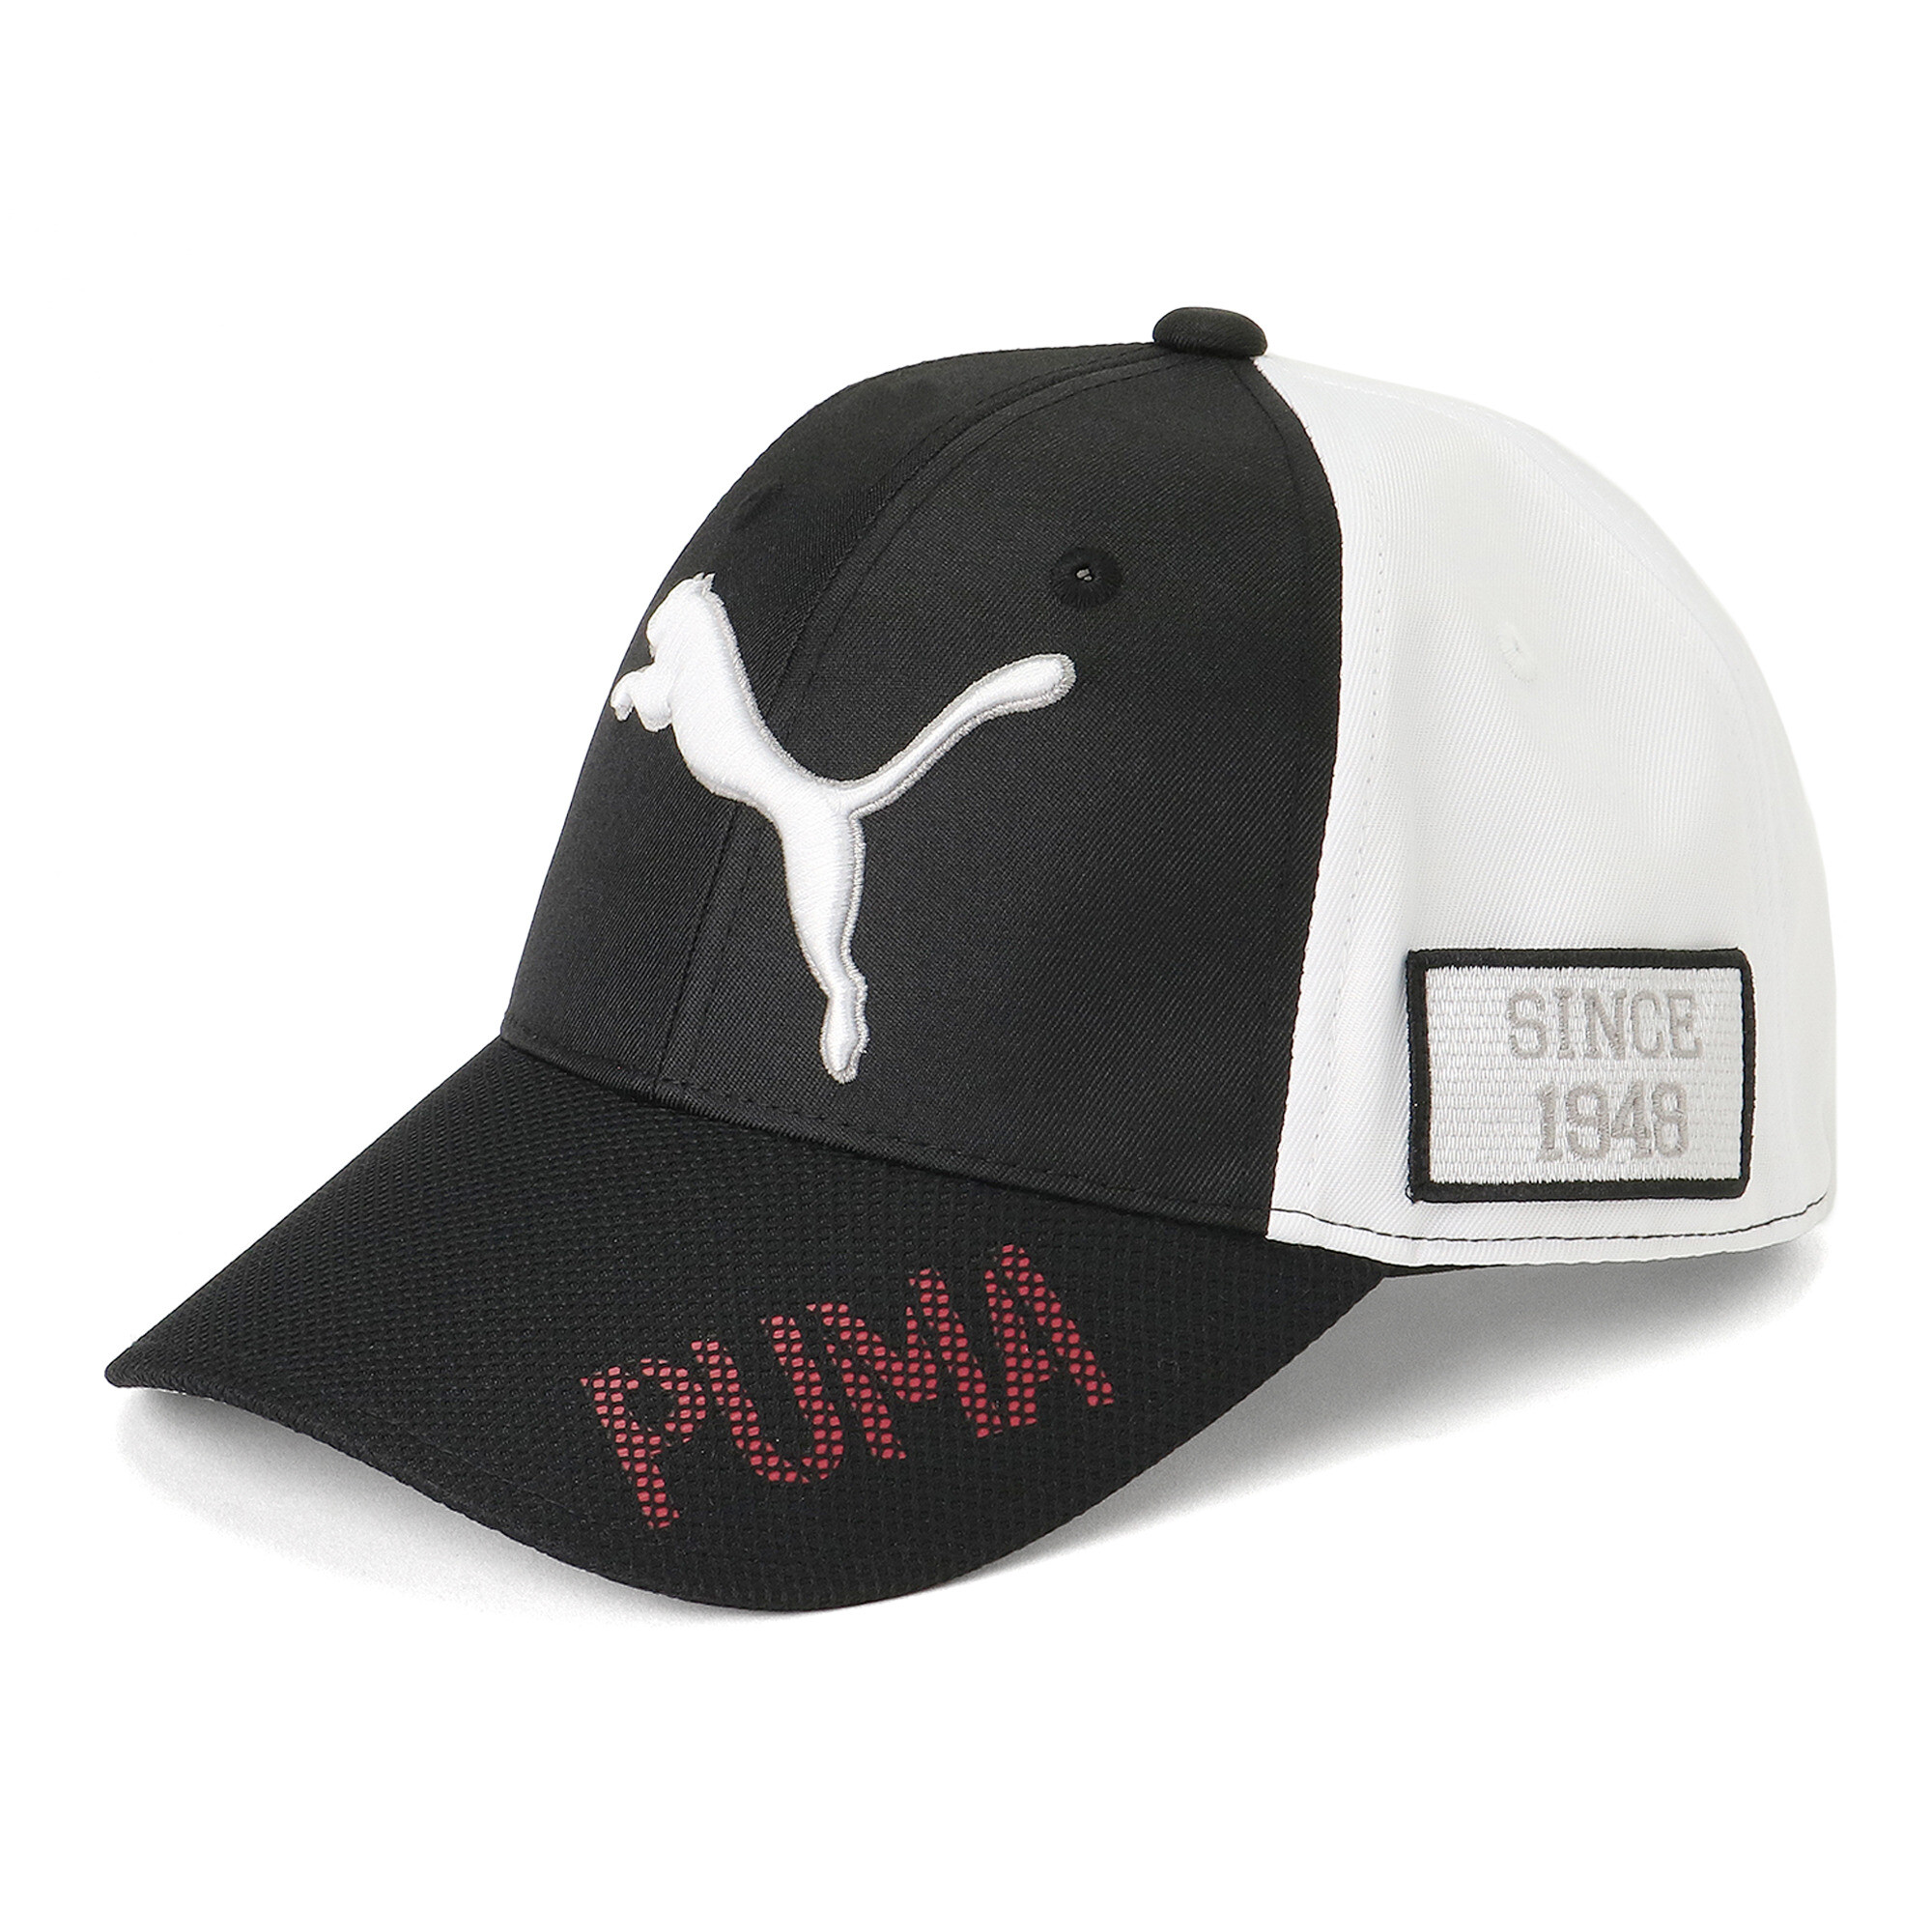  プーマ メンズ ゴルフ ツアー パフォーマンス キャップ メンズ PUMA Black-Bright White ｜PUMA.com